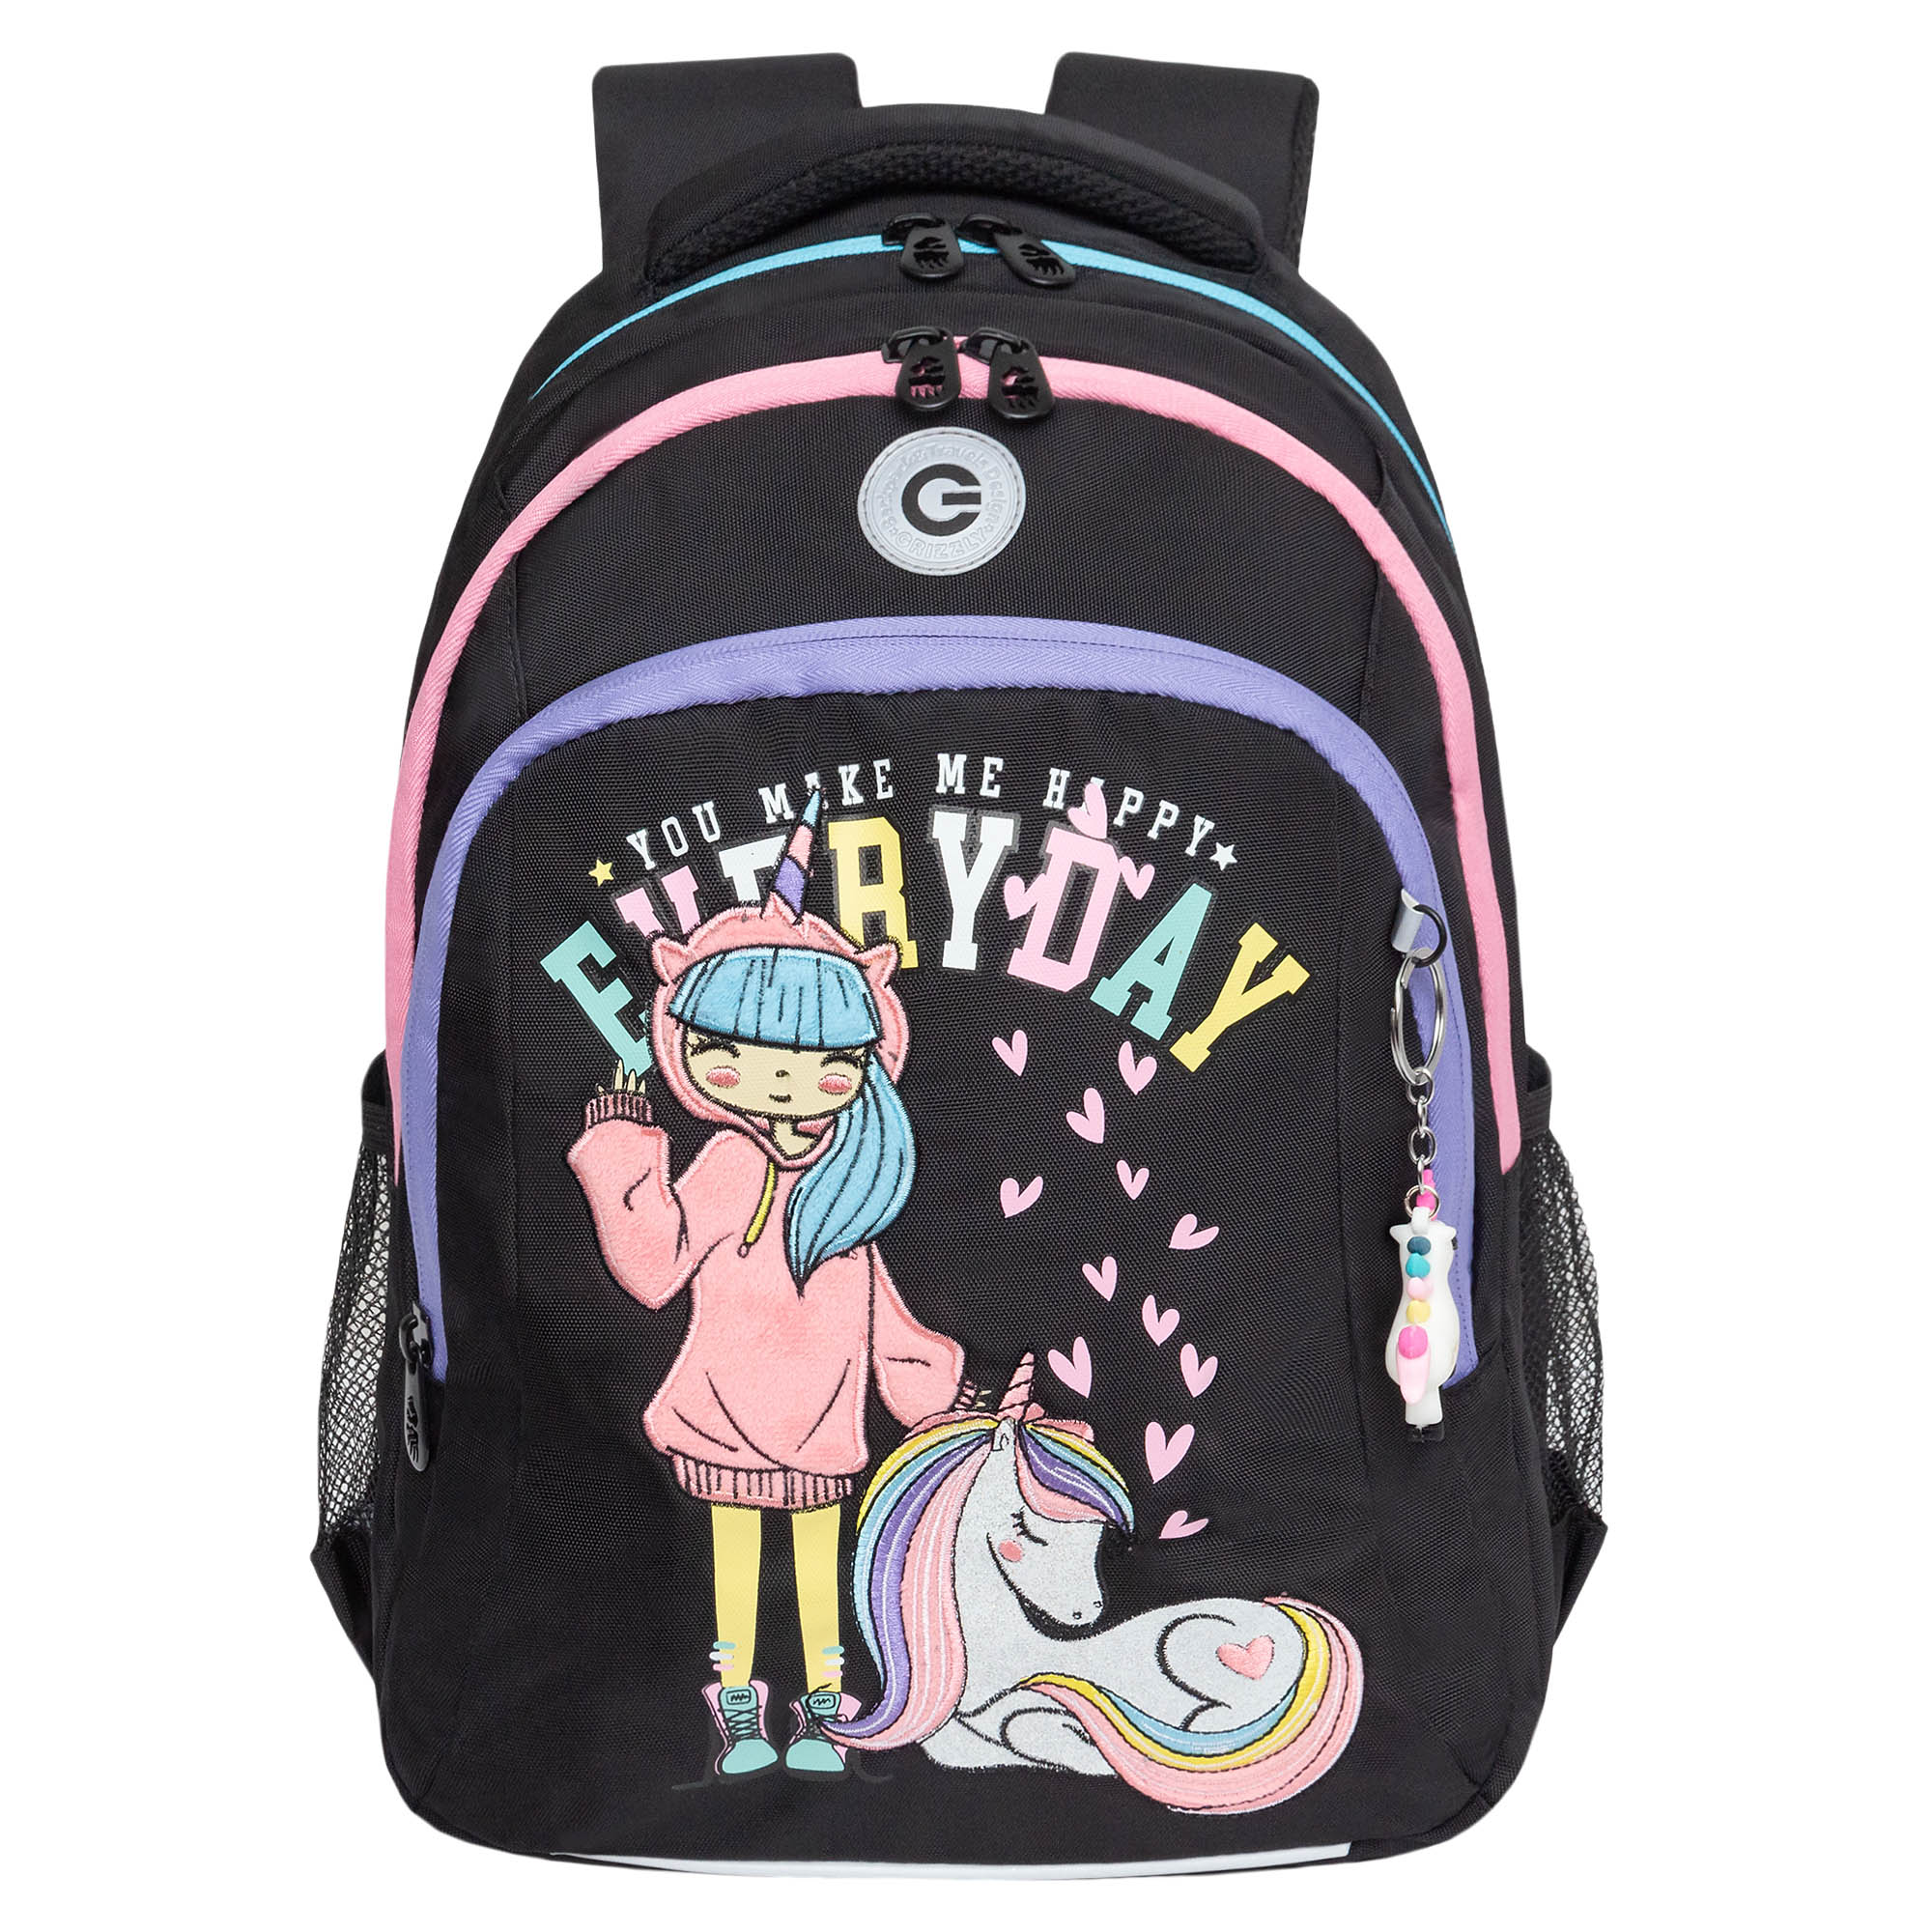 Рюкзак школьный GRIZZLY с карманом для ноутбука 13 3 отделения для девочки RG-461-2 1